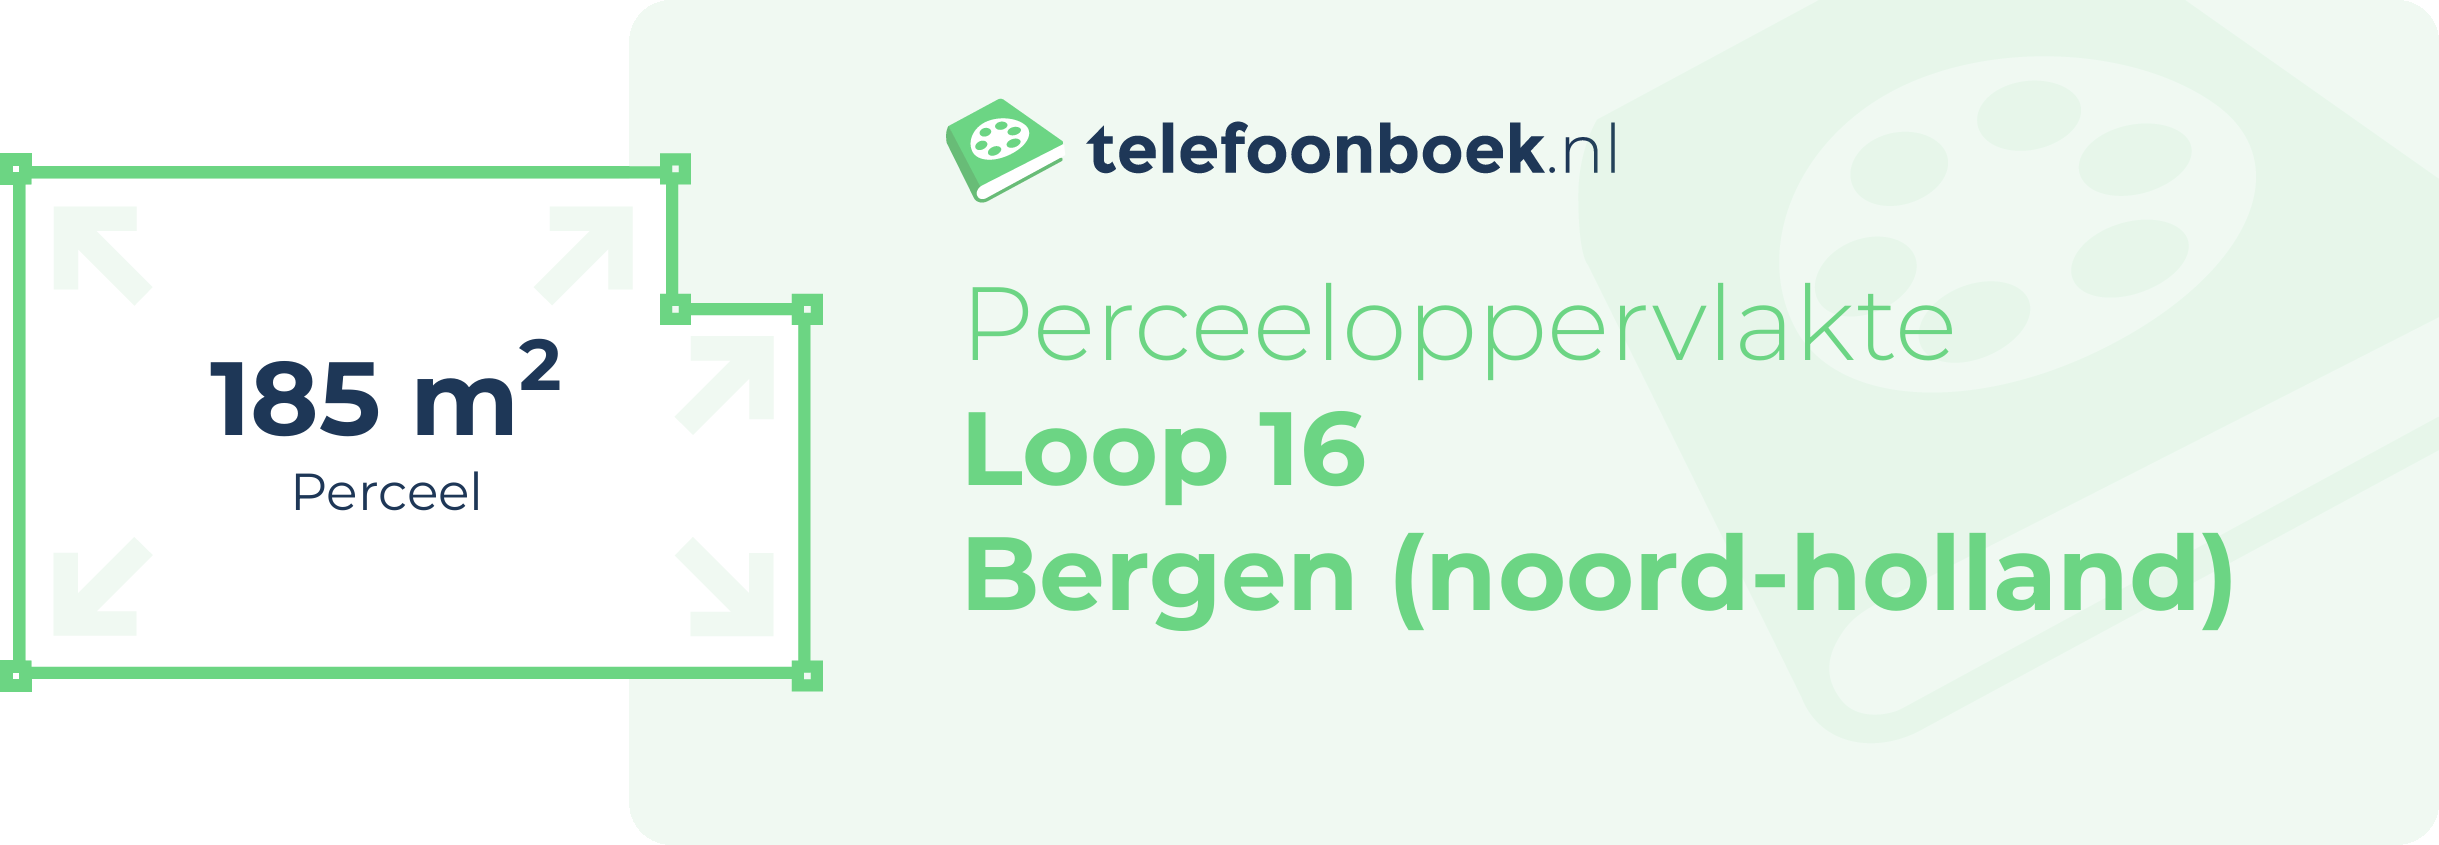 Perceeloppervlakte Loop 16 Bergen (Noord-Holland)